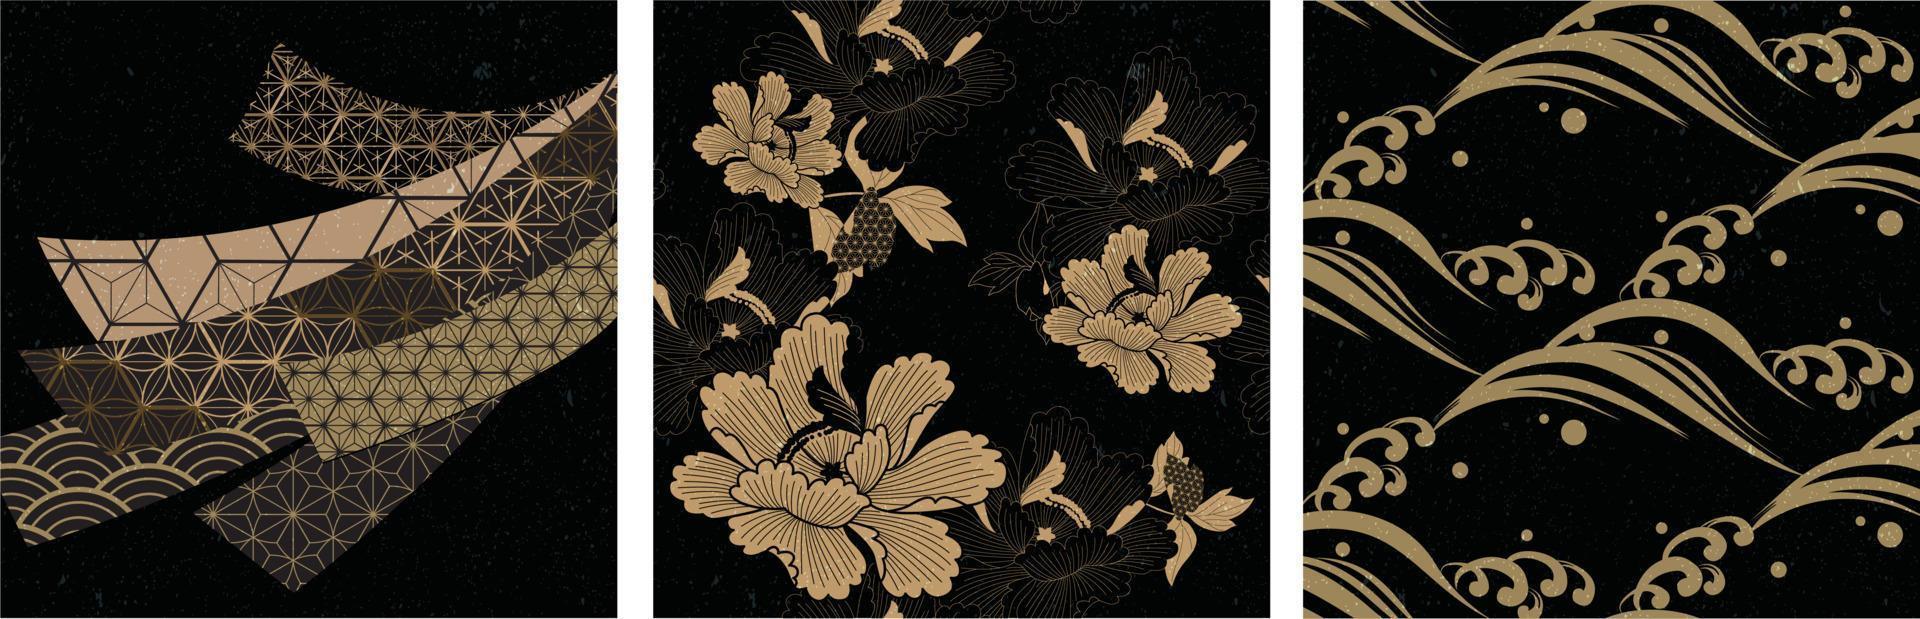 vector de patrones sin fisuras japoneses y elementos asiáticos. onda, elementos de flor de peonía en estilo vintage.